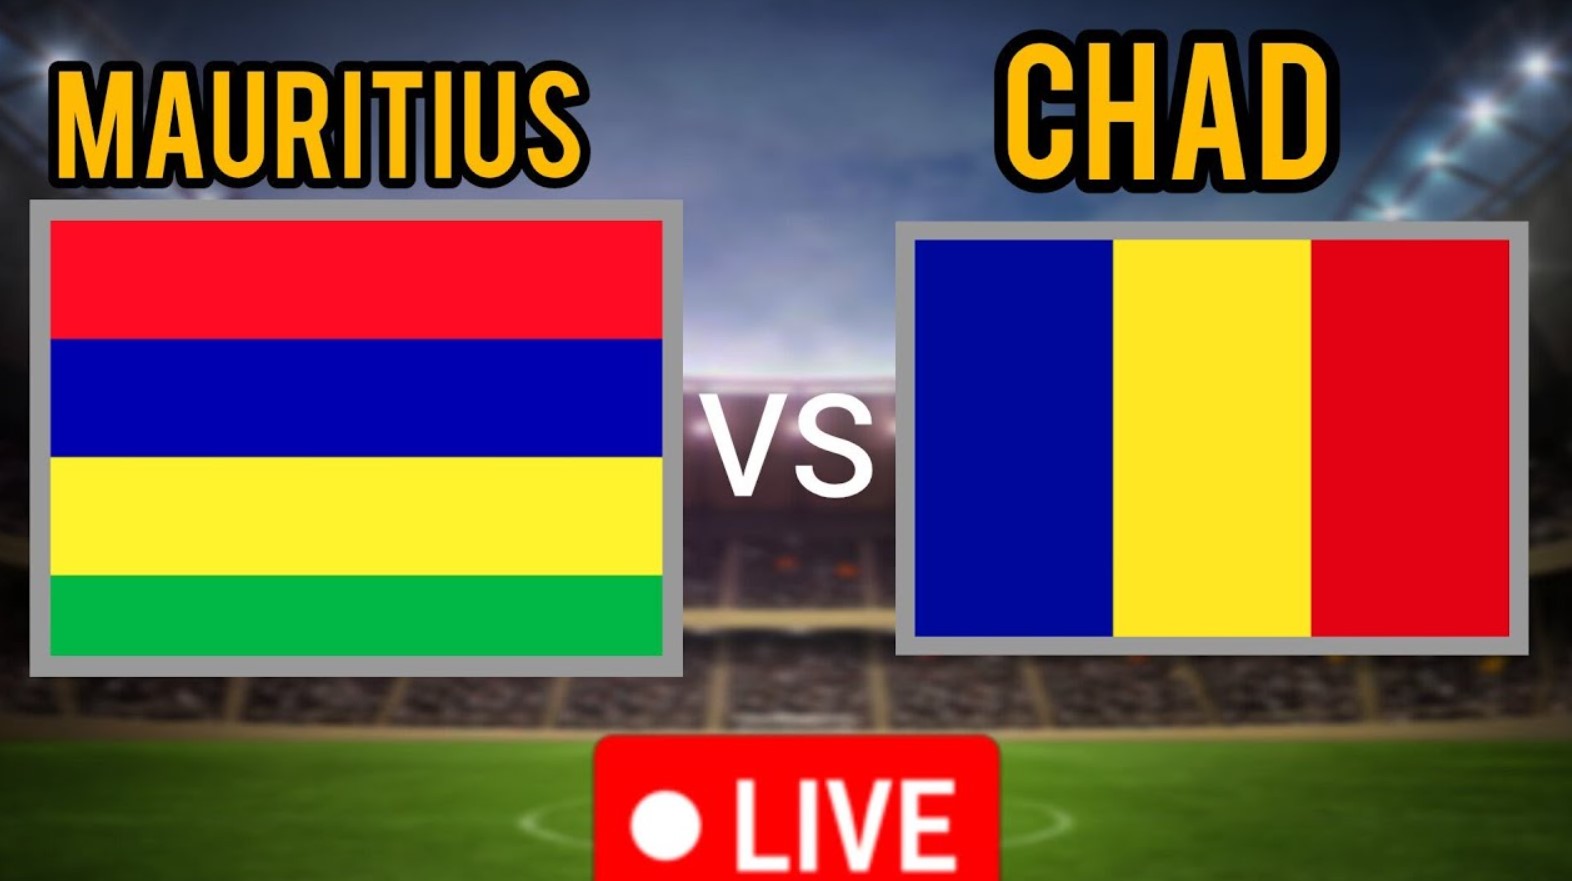 Chad và Mauritius mới chỉ gặp nhau có 2 trận đấu